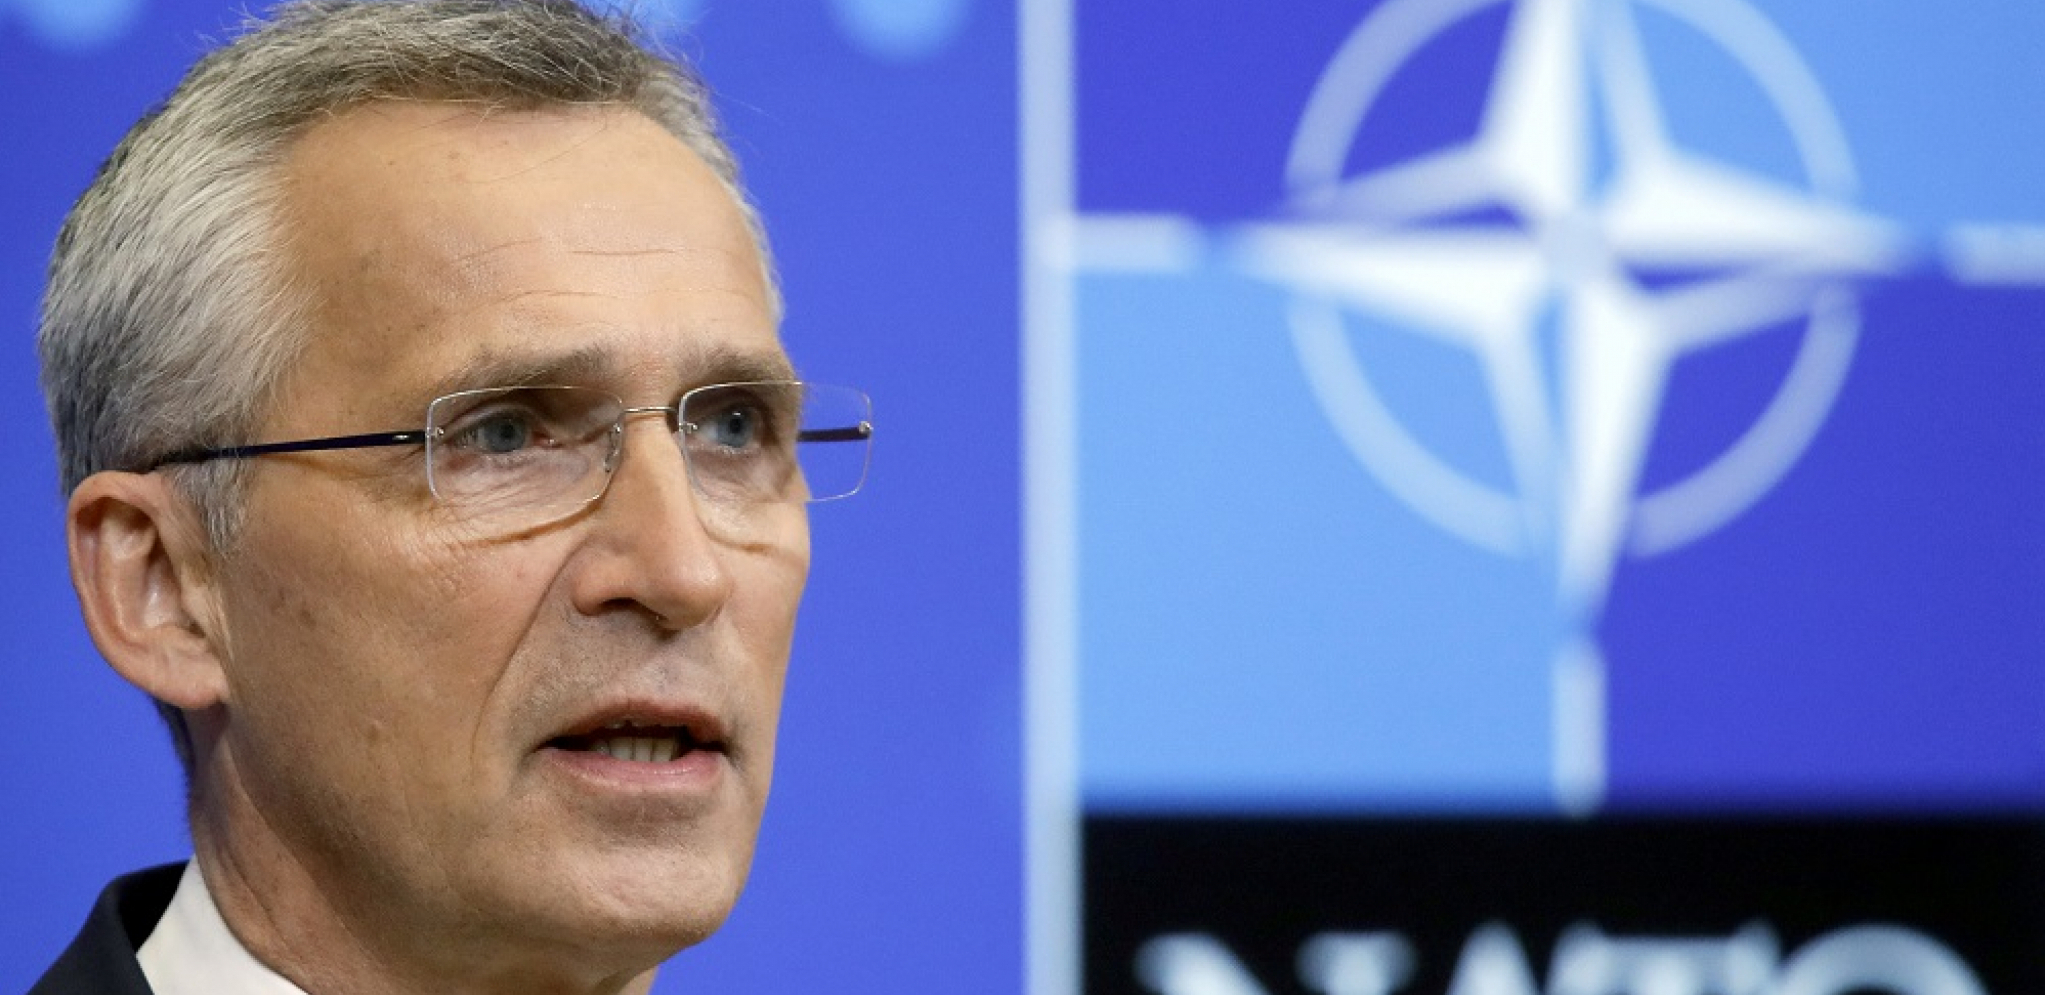 OGLASIO SE NATO: Stoltenberg traži razumevanje!